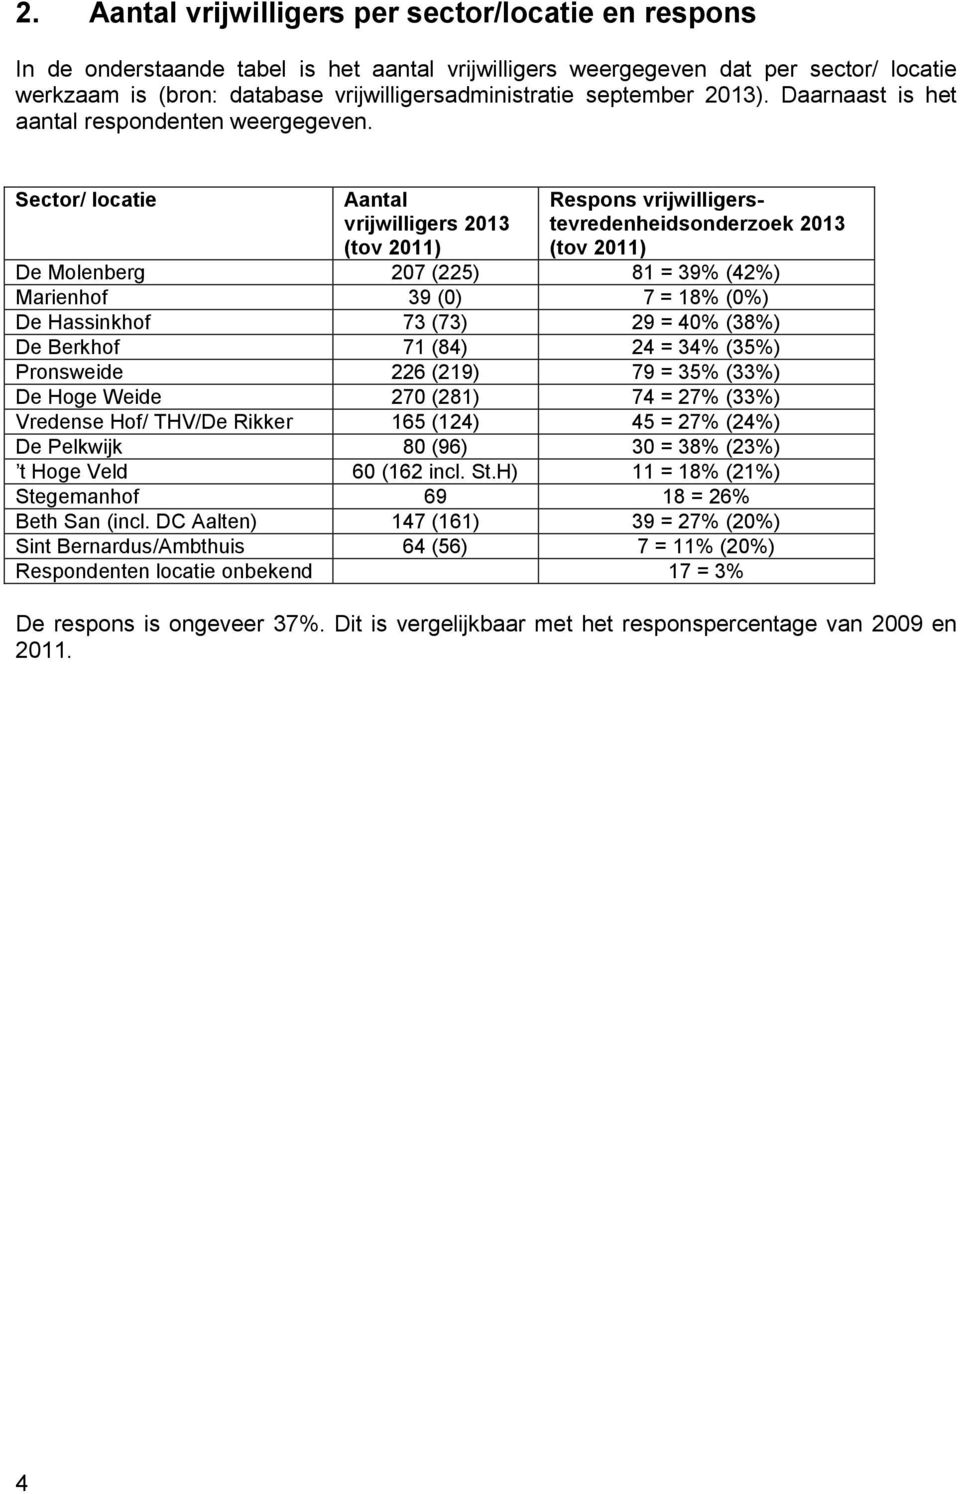 Sector/ locatie Aantal vrijwilligers 21 (tov 211) Respons vrijwilligerstevredenheidsonderzoek 21 (tov 211) 2 (22) 1 = % (2%) () = 1% (%) () = % (%) De Berkhof () 2 = % (%) 226 (21) = % (%) 2